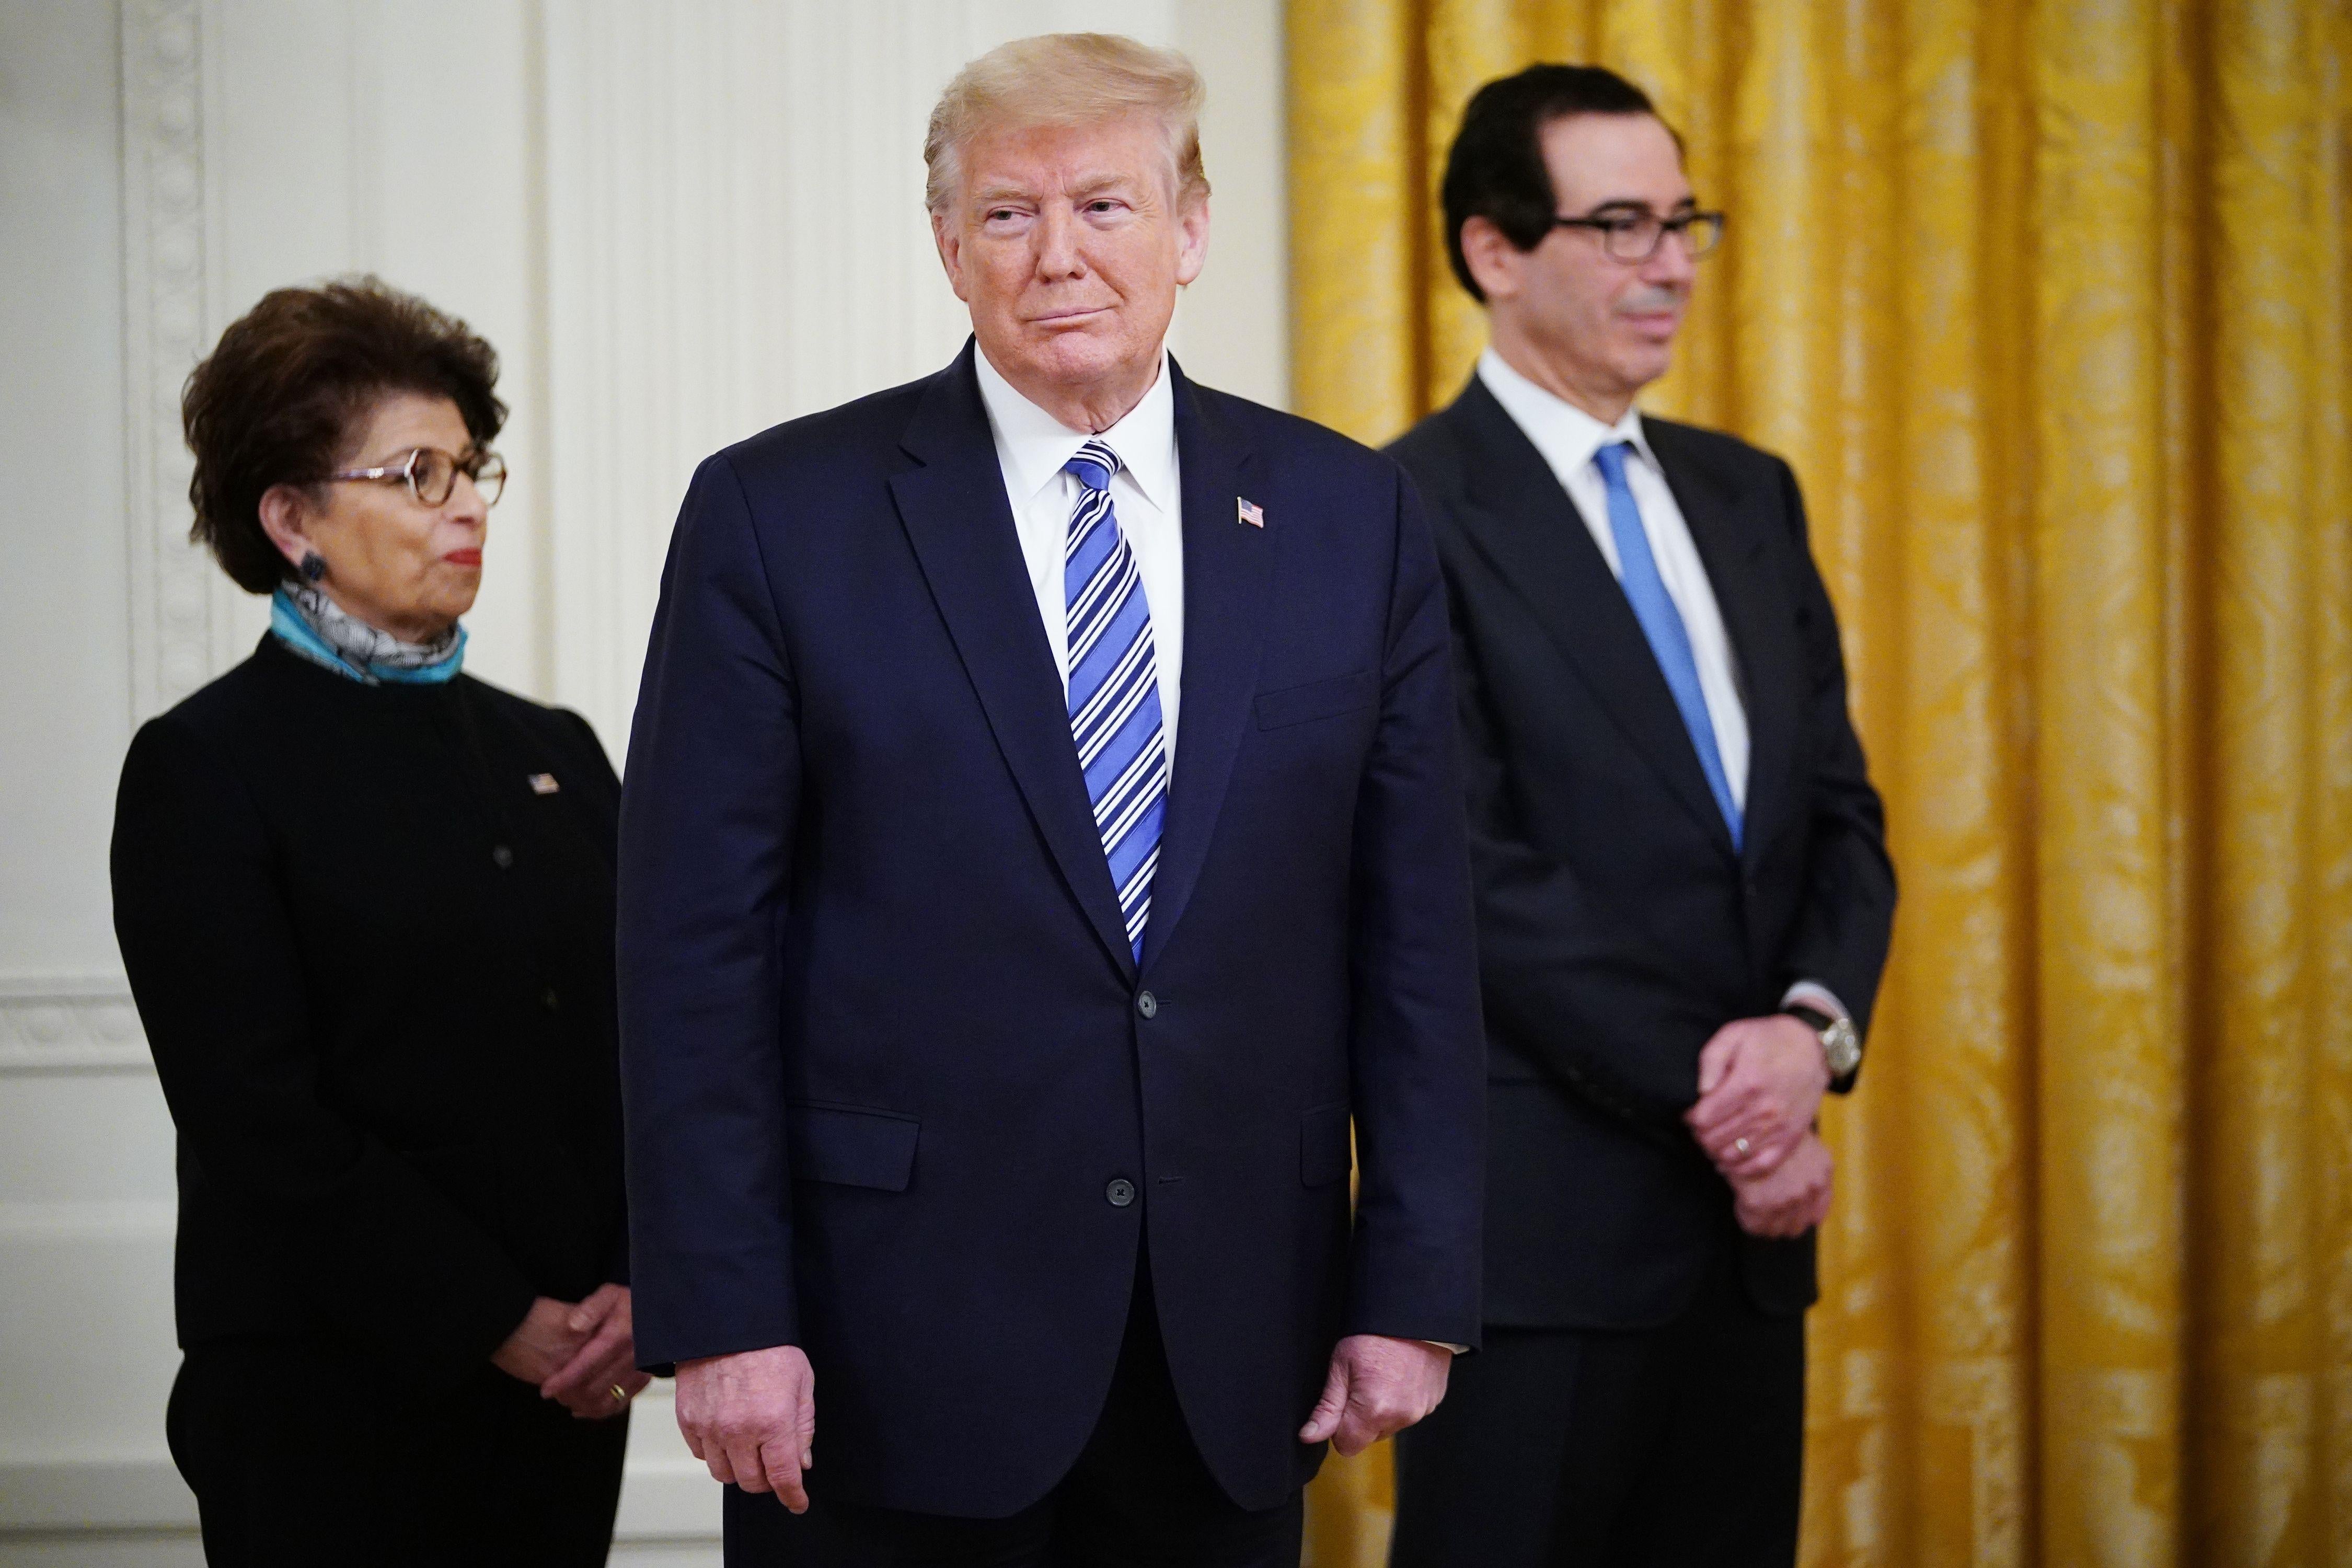 Donald Trump stands in front of Jovita Carranza and Steven Mnuchin.